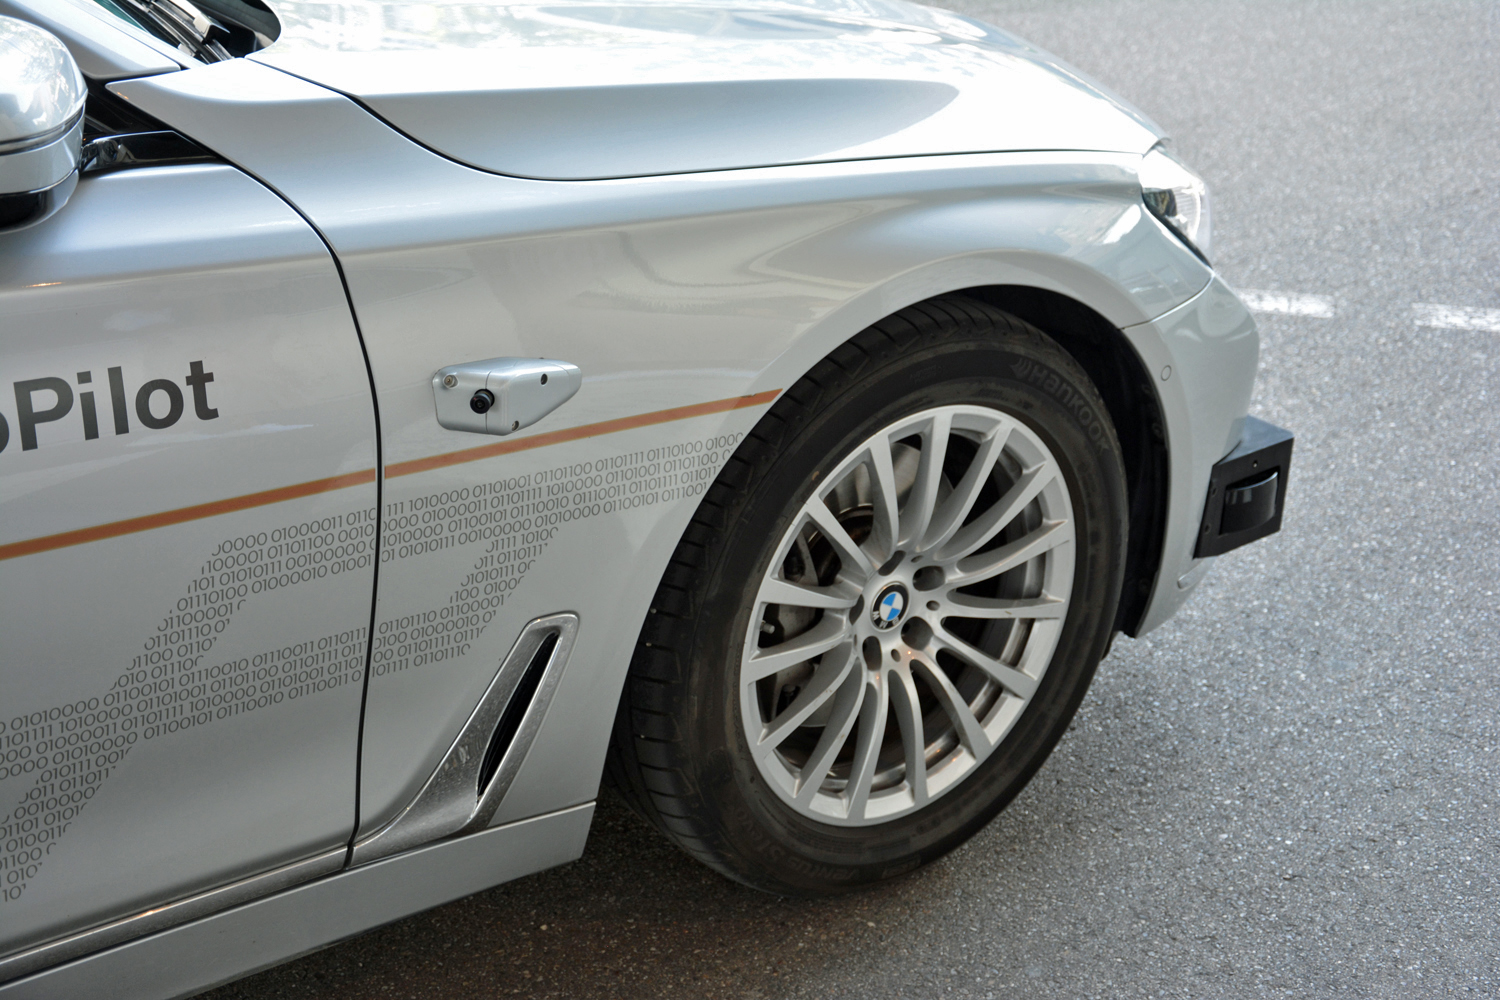 BMW autonomous 7 series